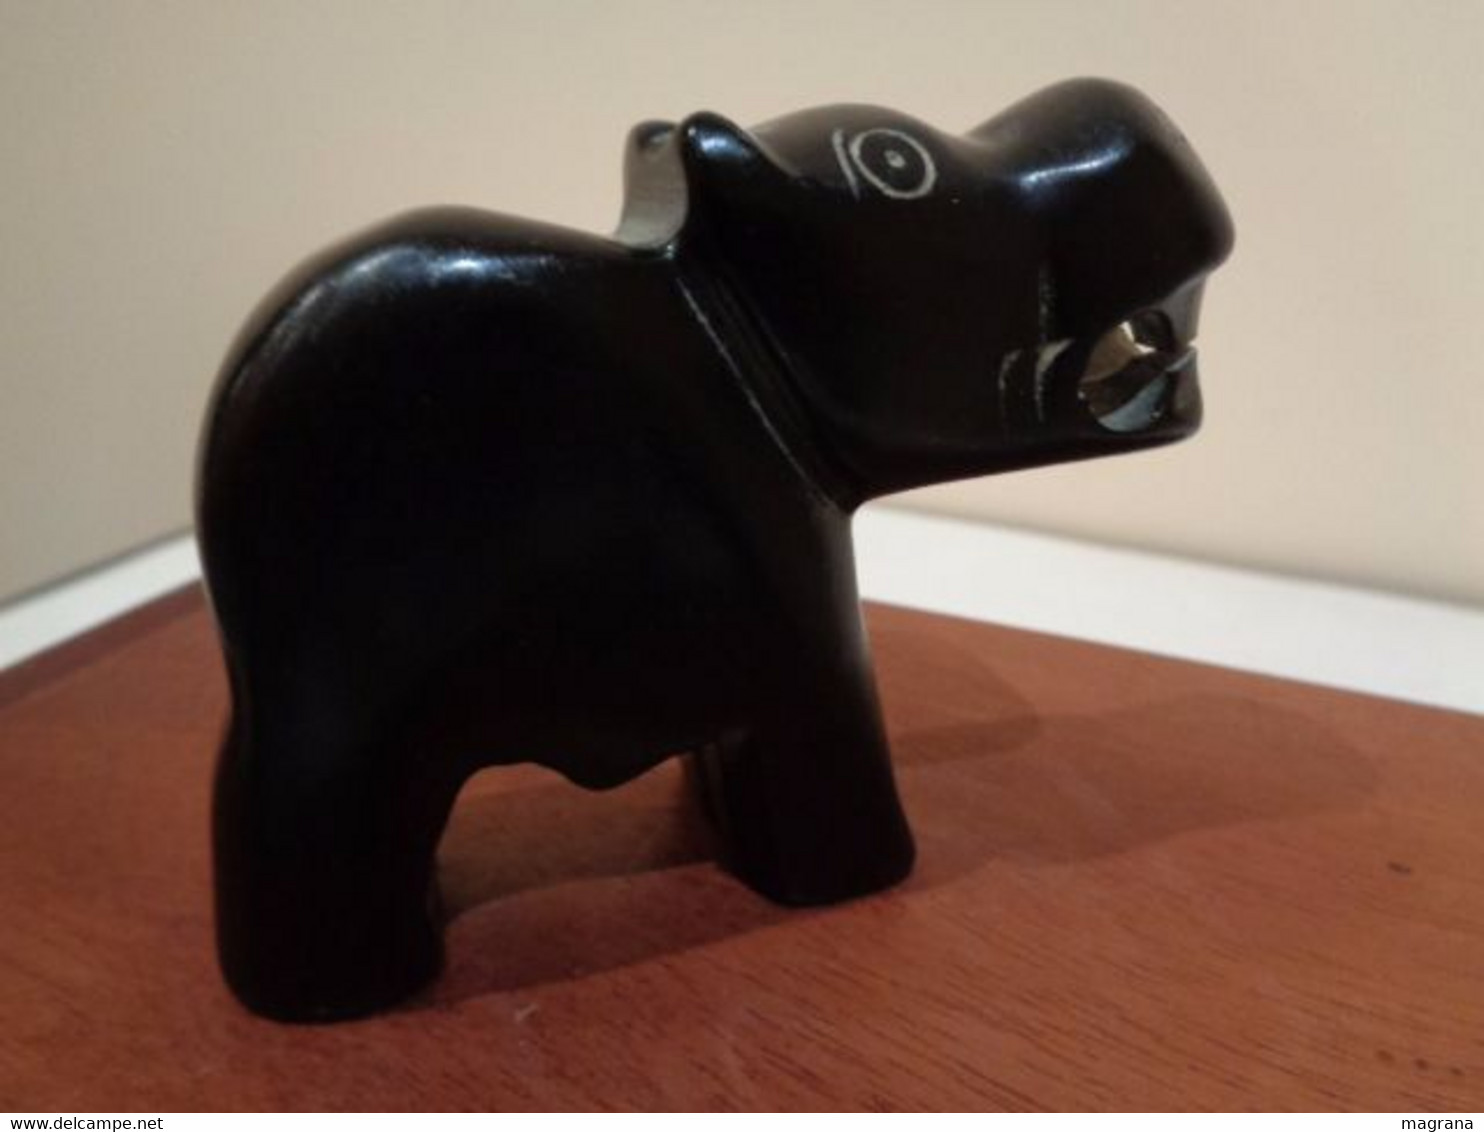 Escultura de un Hipopótamo con la boca abierta. De piedra negra.